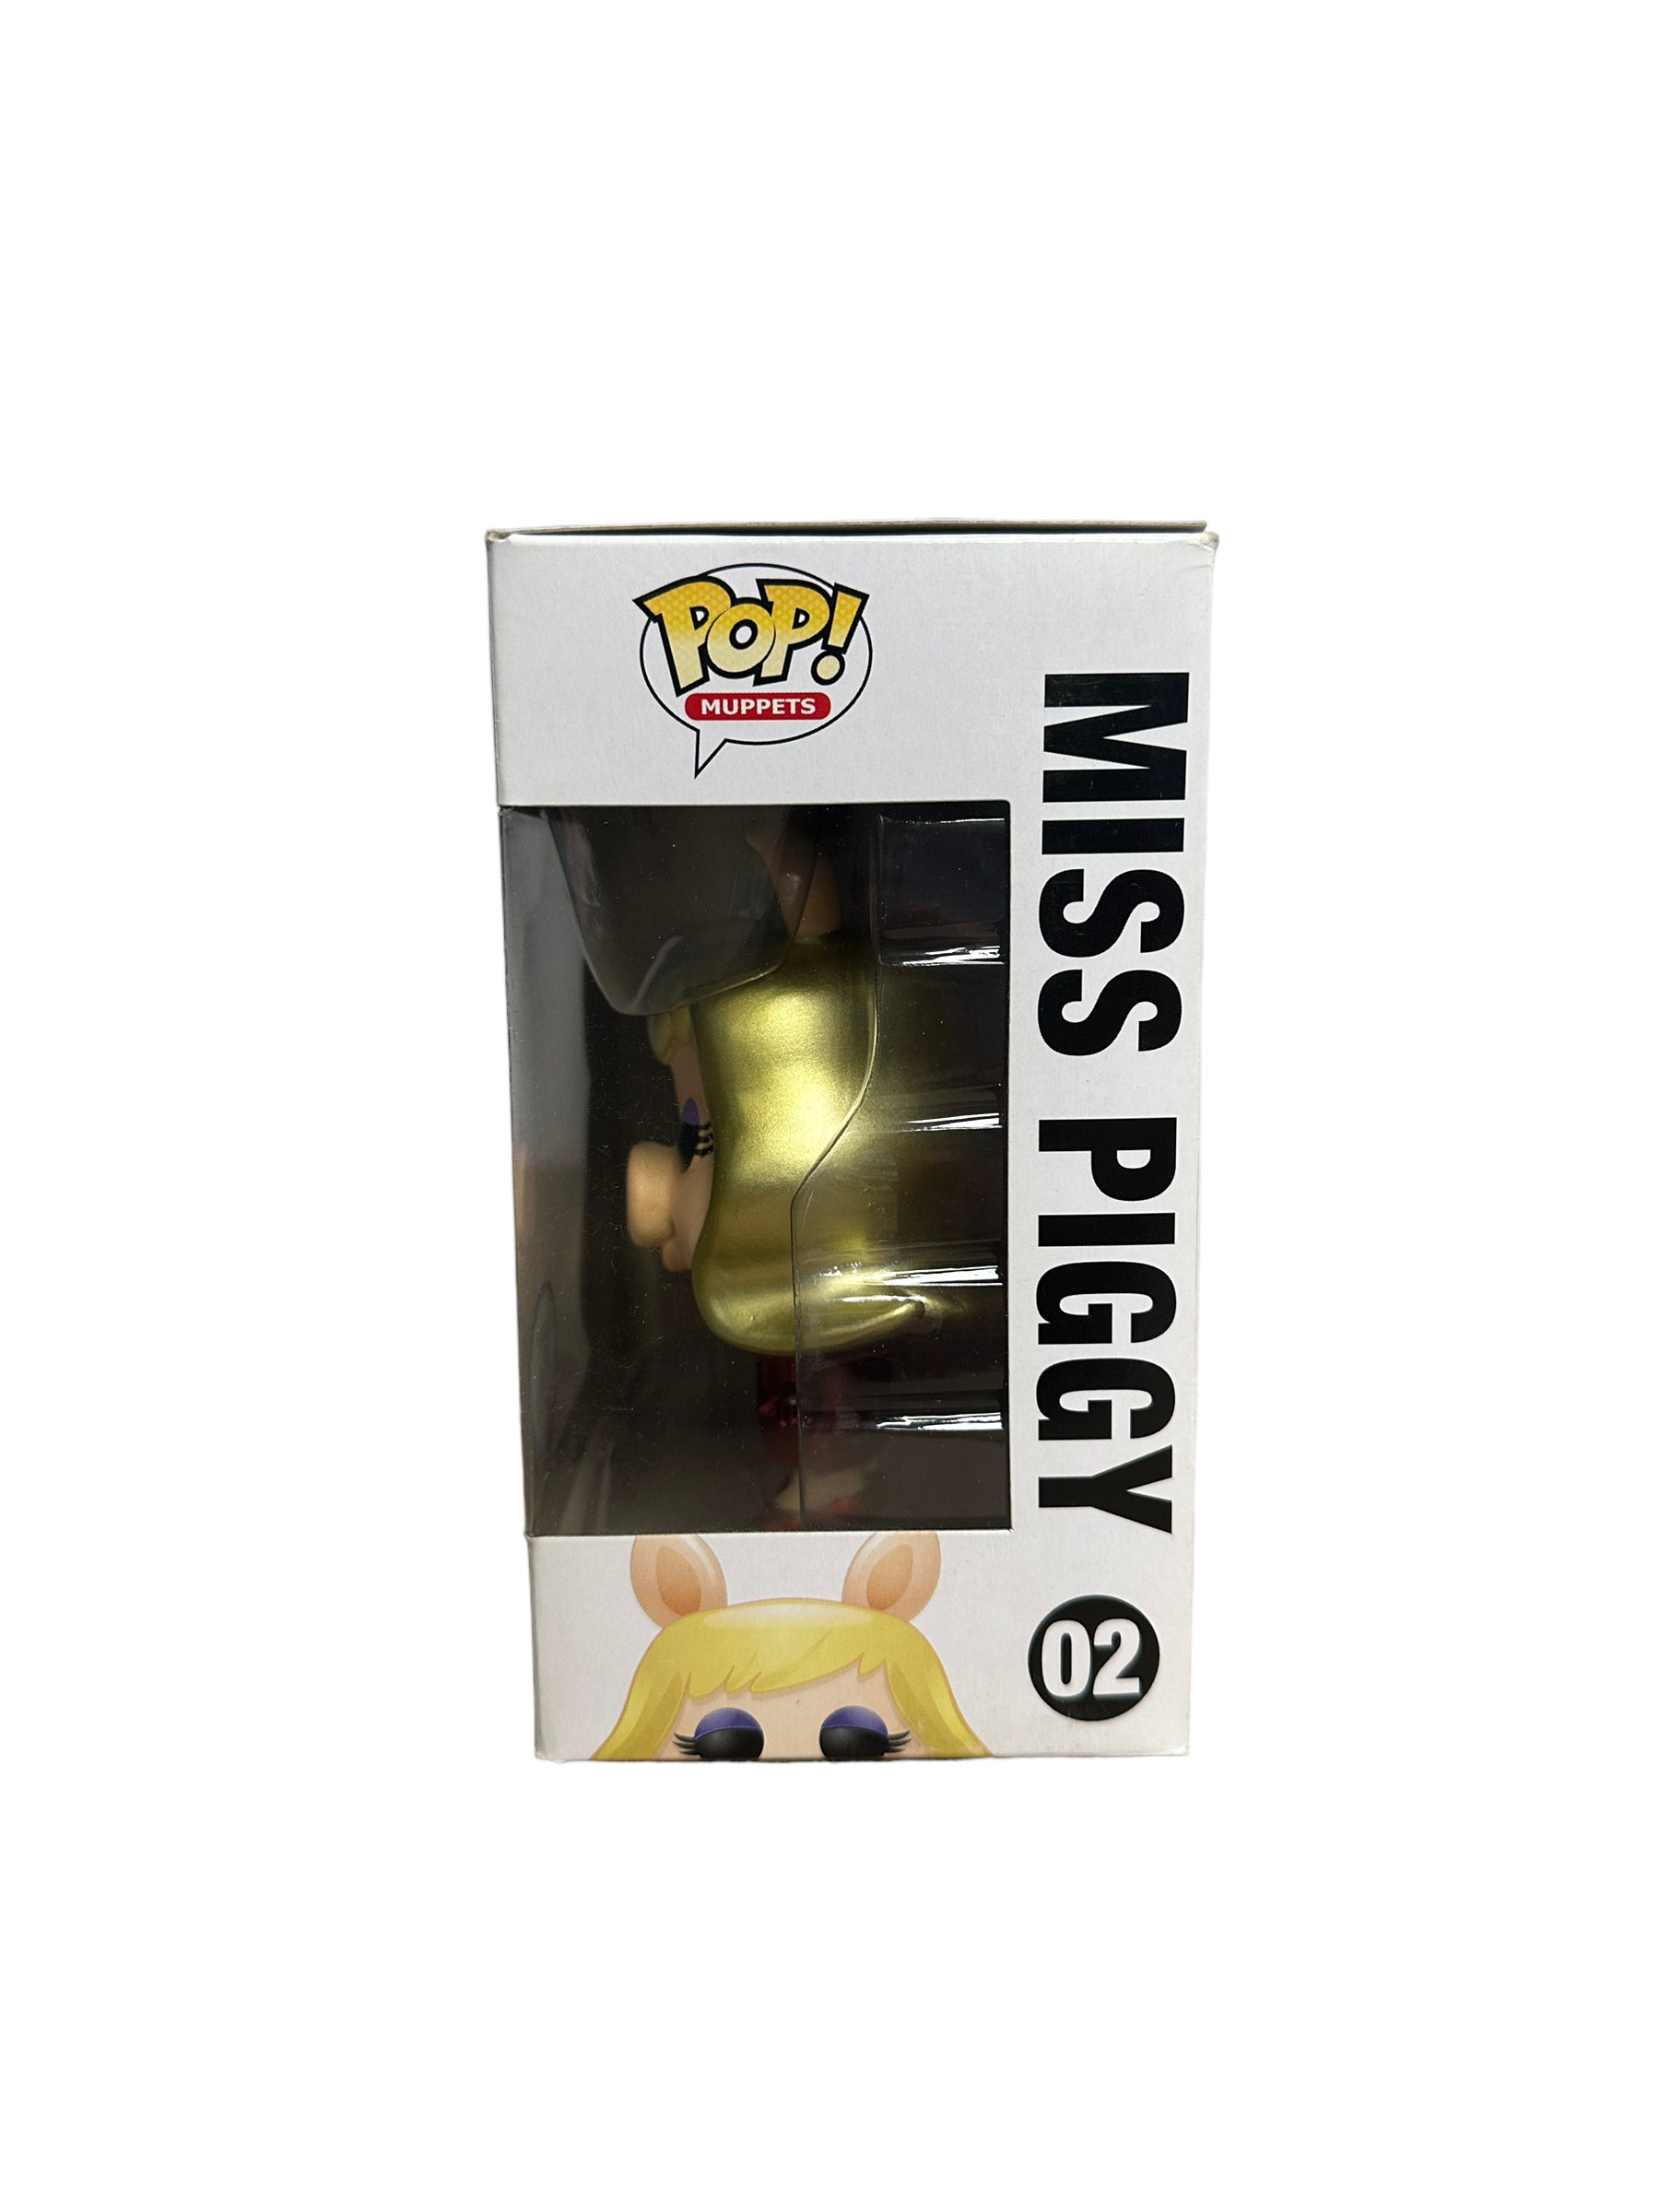 Miss Piggy #02 (Metallic) Funko Pop! - The Muppets - SDCC 2013 Exclusive LE480 Pcs - Condition 7/10